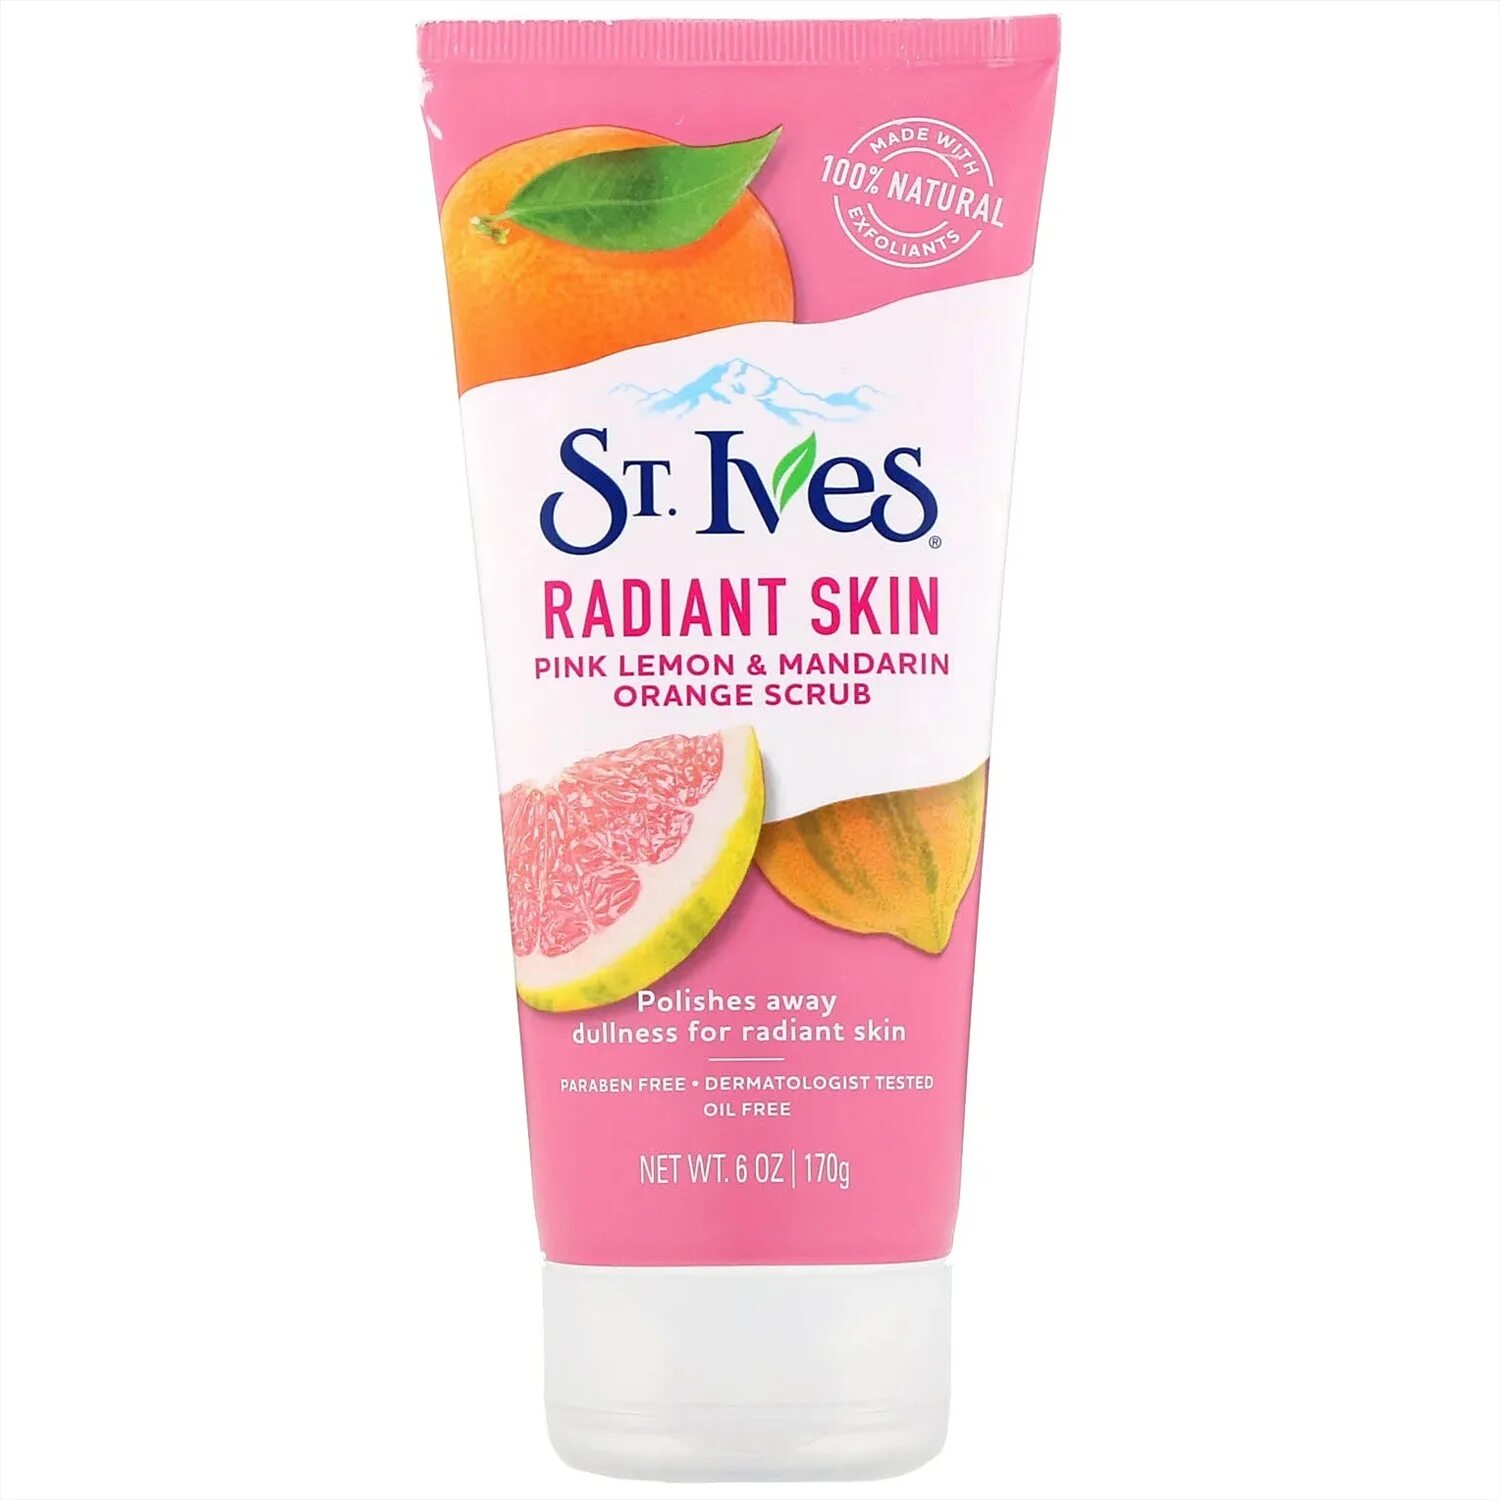 Скин скраб. St Ives скраб. Скраб для лица St. Ives. Скраб Lemon Mandarin. Оранжевый скраб для лица.